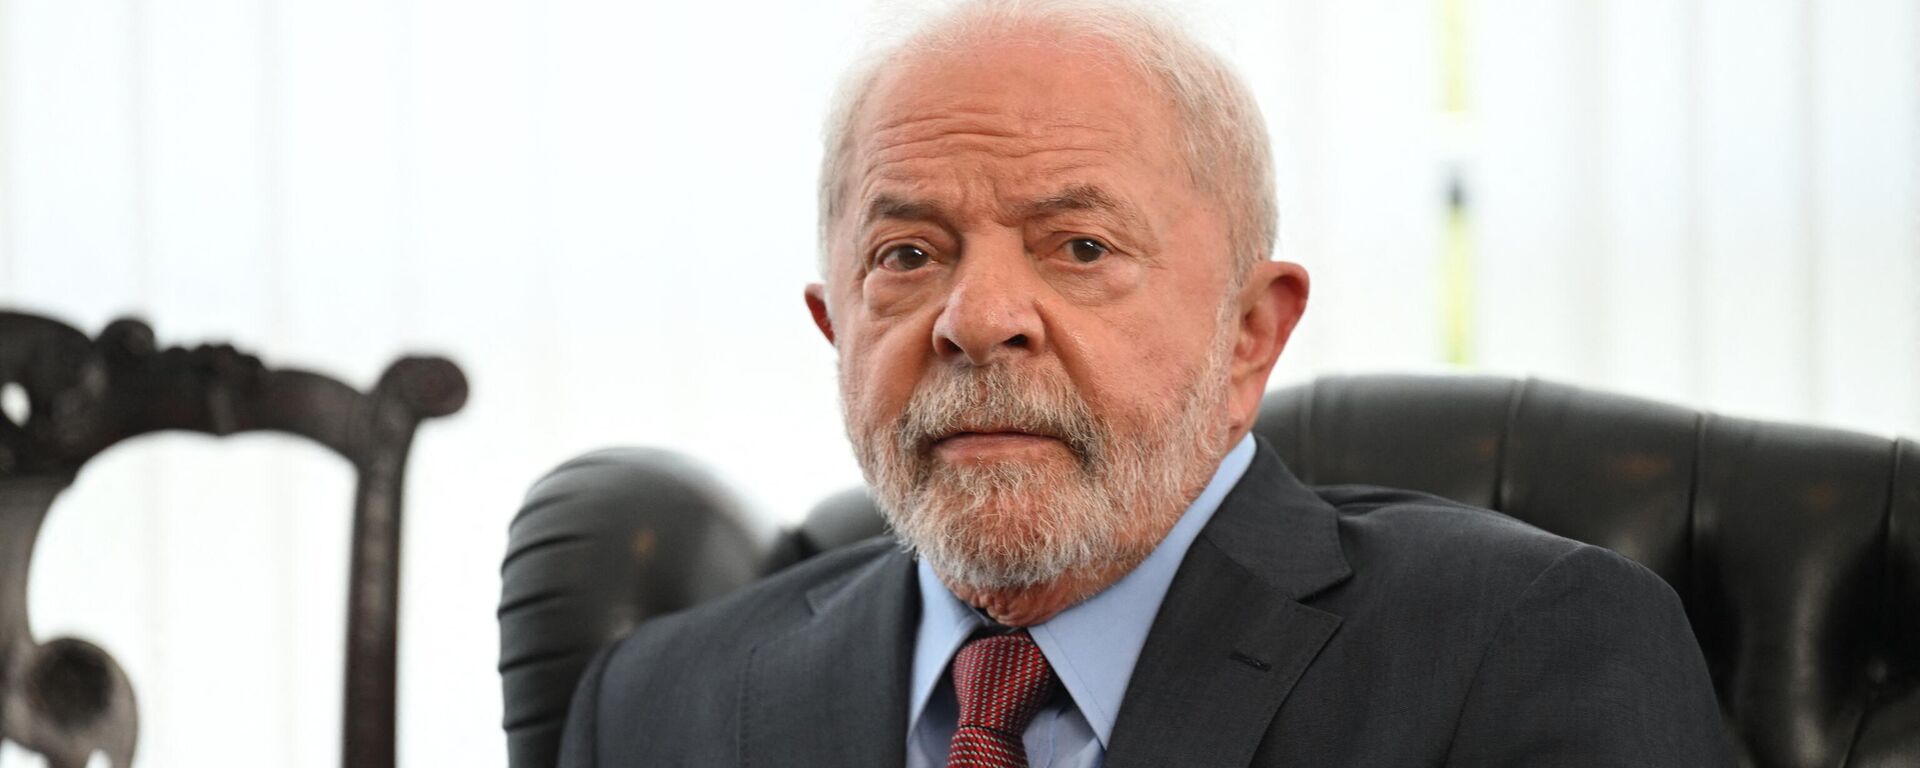 O presidente do Brasil, Luiz Inácio Lula da Silva, em Brasília (DF), em 2 de janeiro de 2023 - Sputnik Brasil, 1920, 09.01.2023